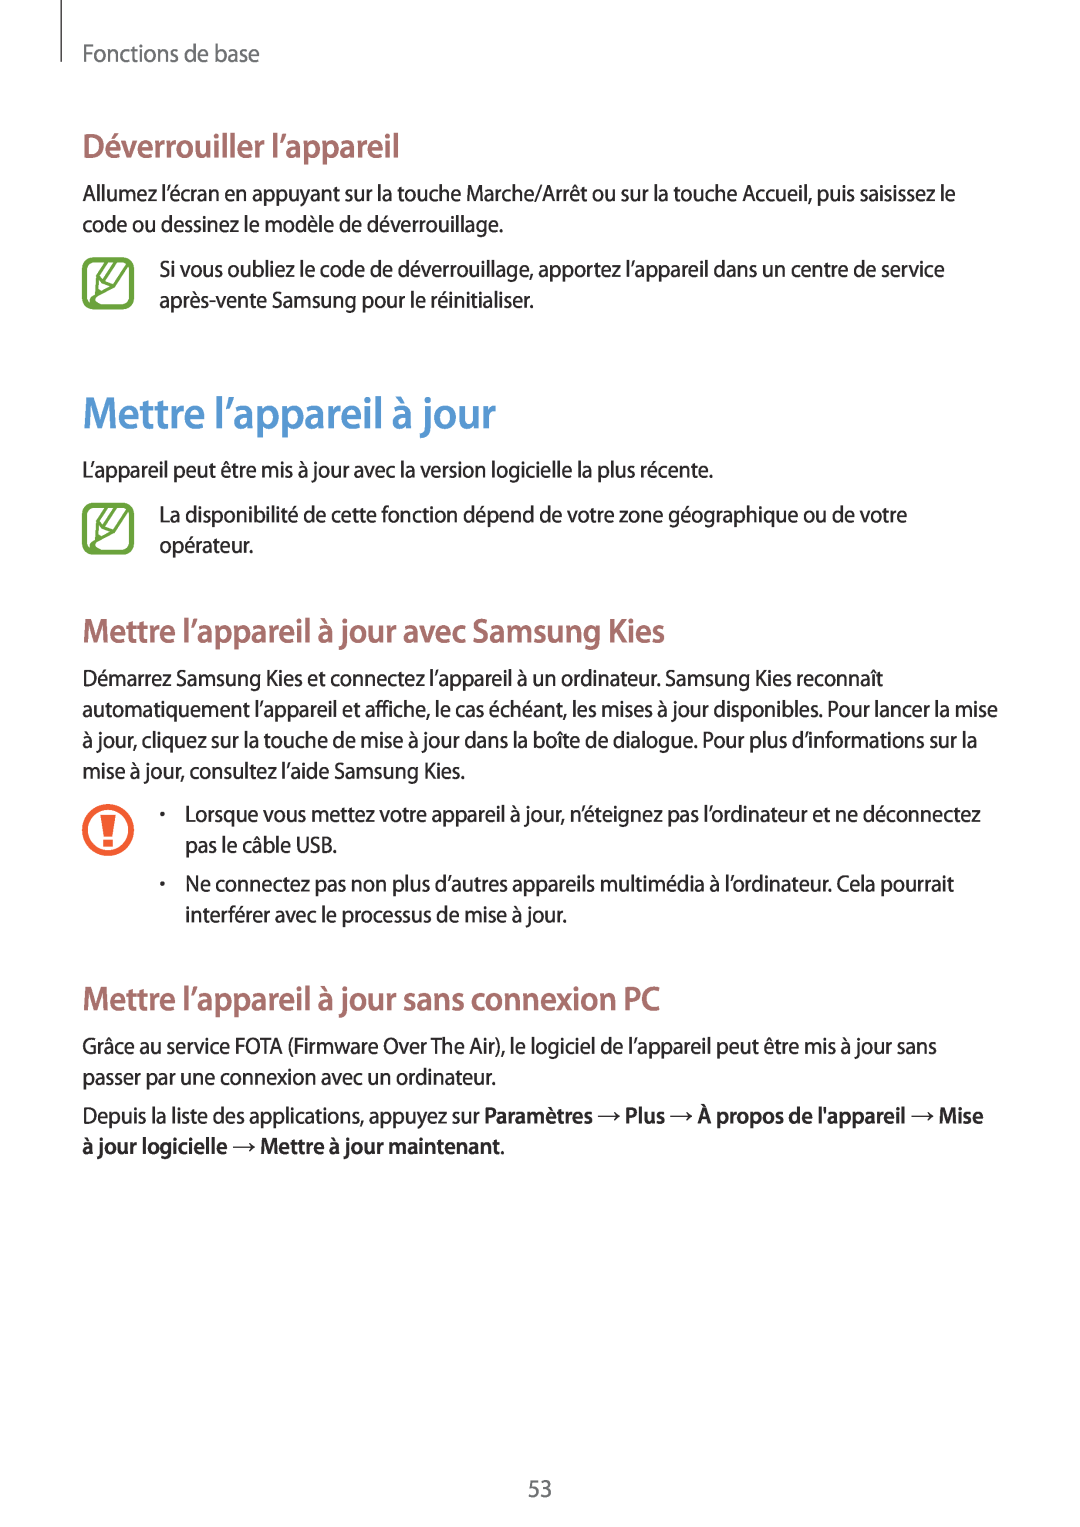 Samsung GT-N7105RWDSFR manual Déverrouiller l’appareil, Mettre l’appareil à jour avec Samsung Kies, Fonctions de base 